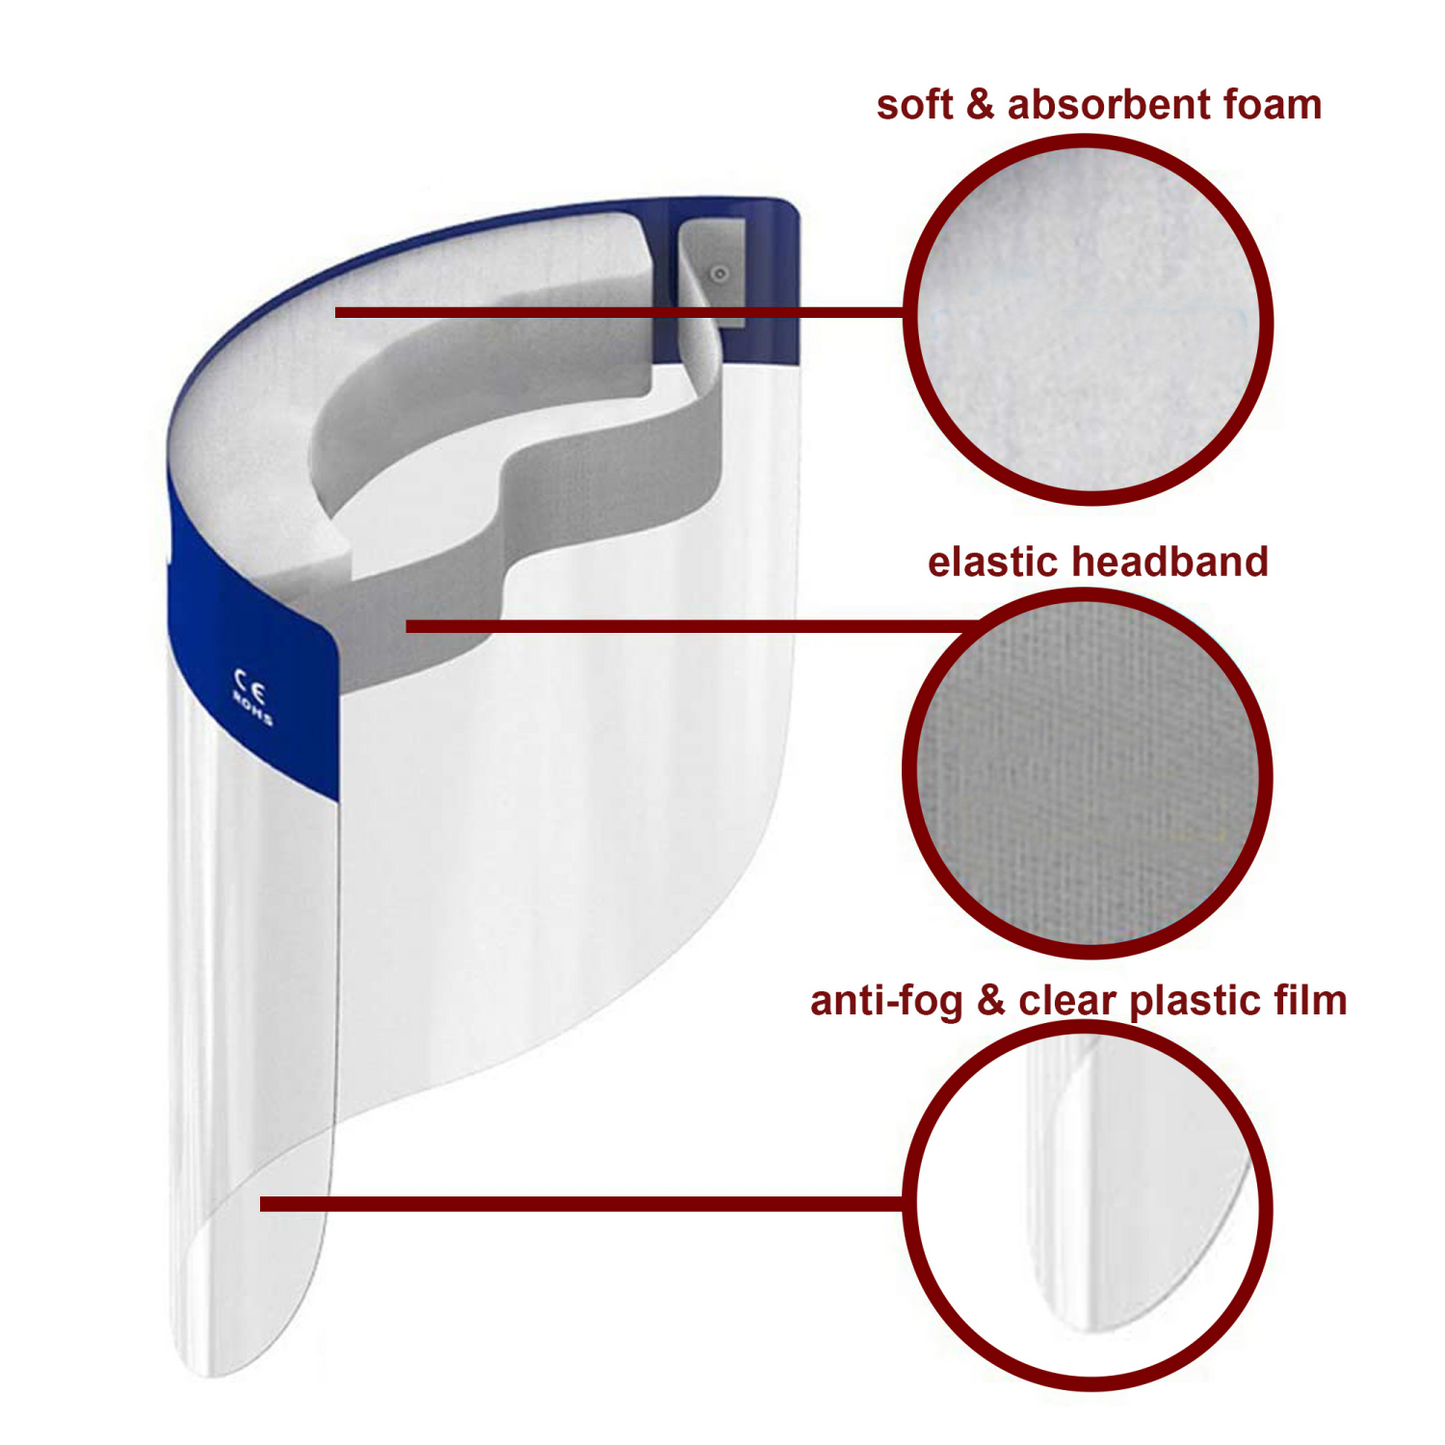 Non-Surgical Face Shield Face Shield Set Van 6 Beschermende Gezichtsschermen